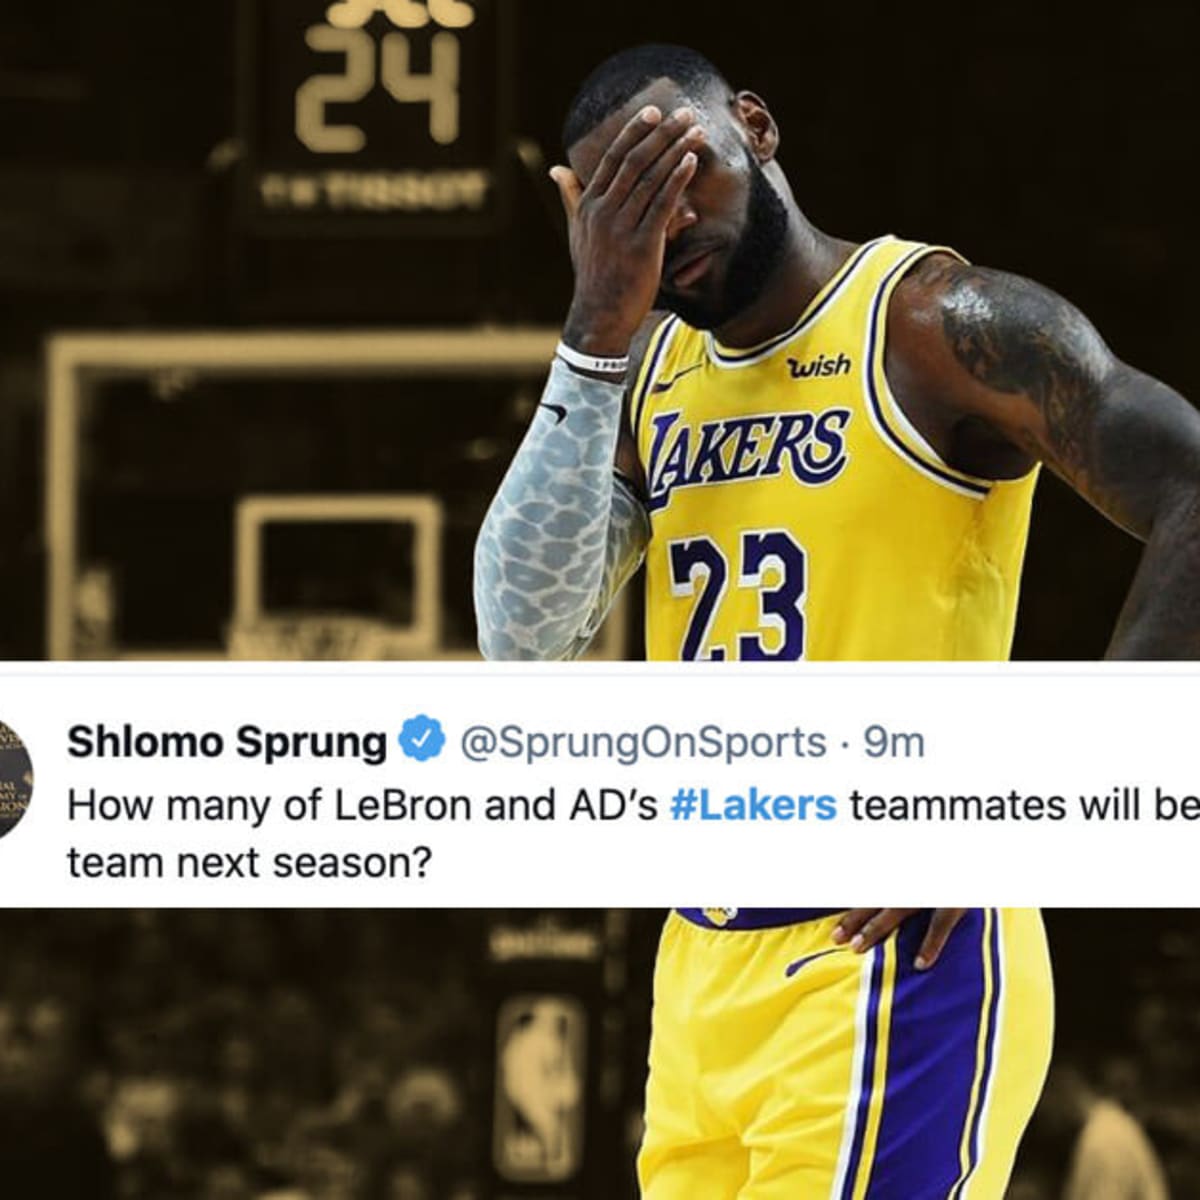 LeBron, Lakers on brink after Suns mauling, Nets advance - Thu